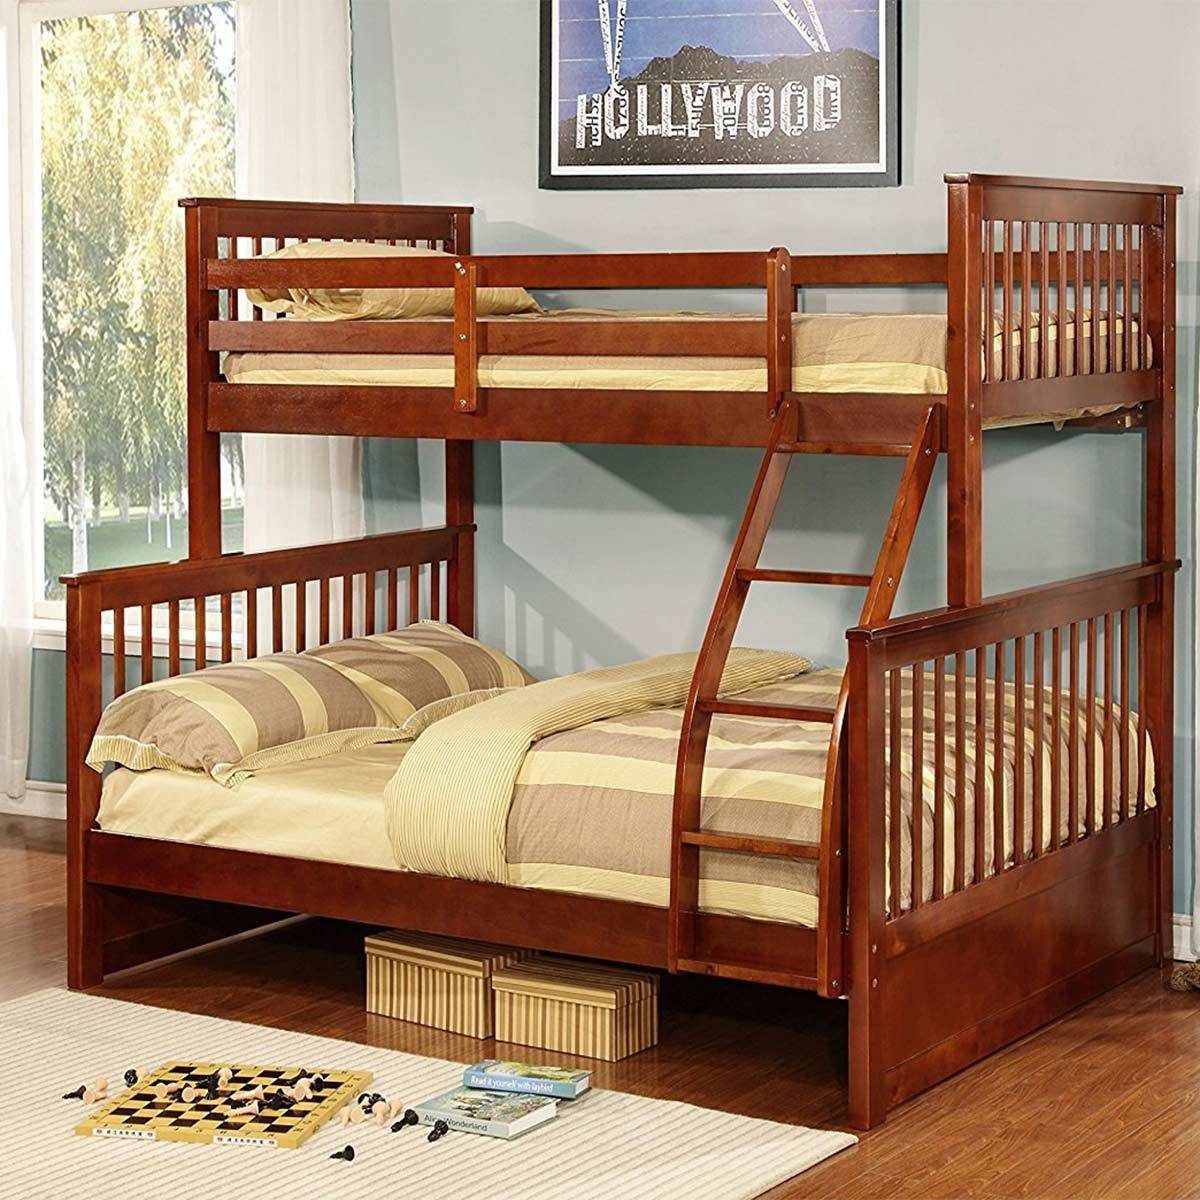 double plus single bunk bed